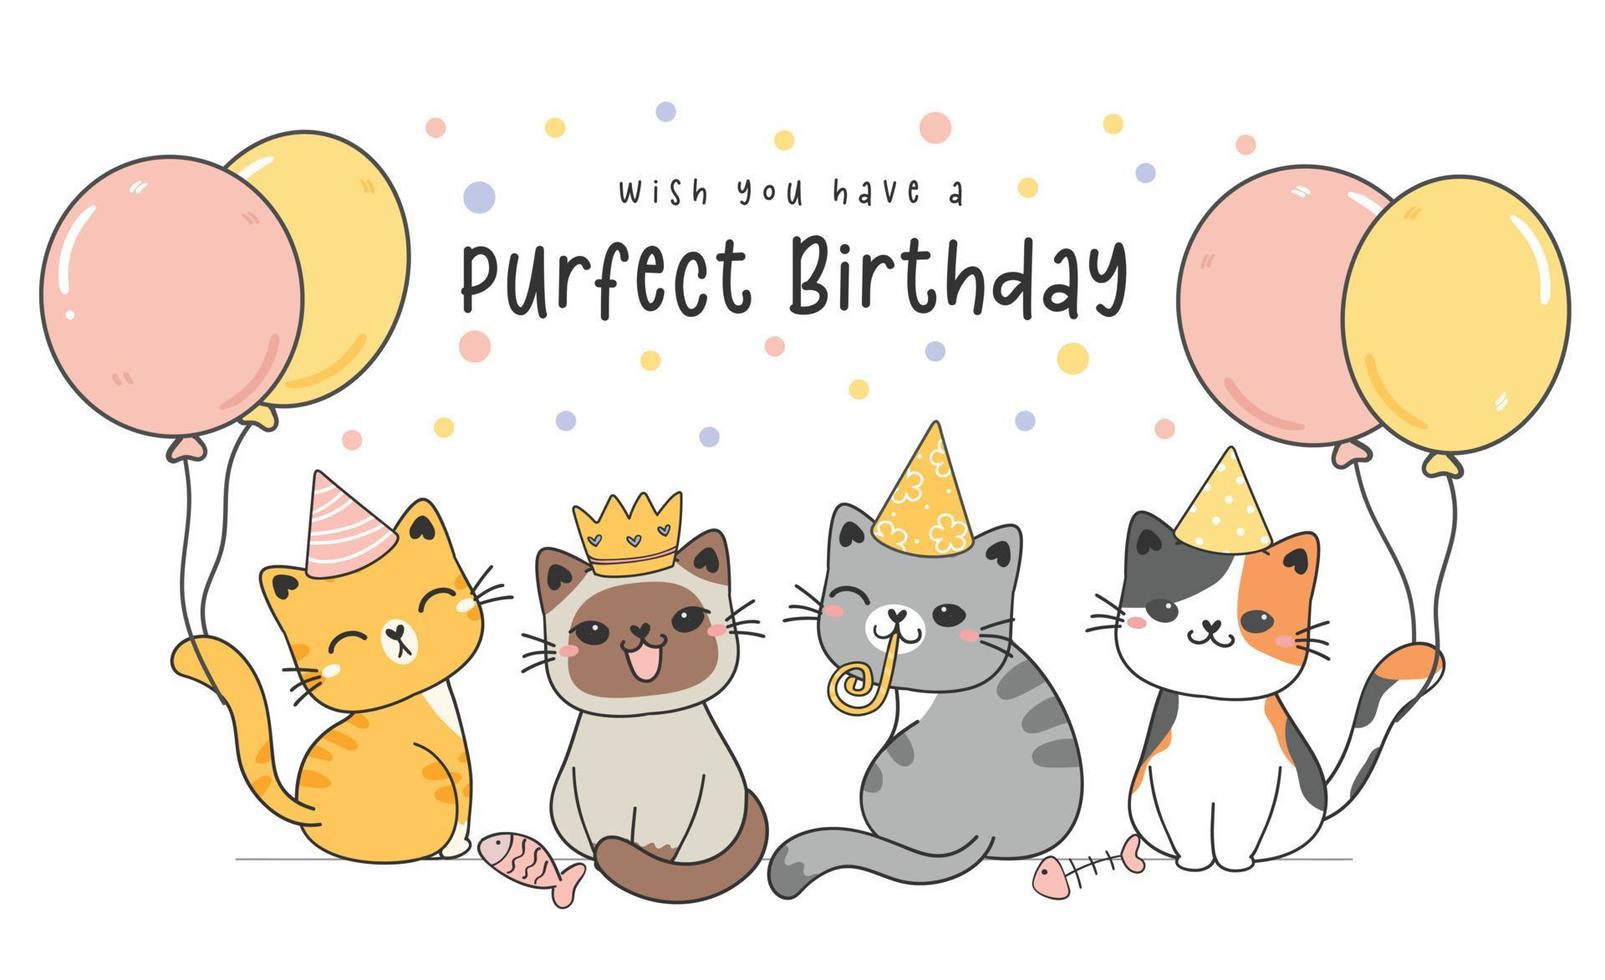 grupo de cuatro lindos gatitos felices de cumpleaños con globos pastel, dibujo de dibujos animados de animales lindos ilustración vectorial tarjeta de cumpleaños de felicitación vector